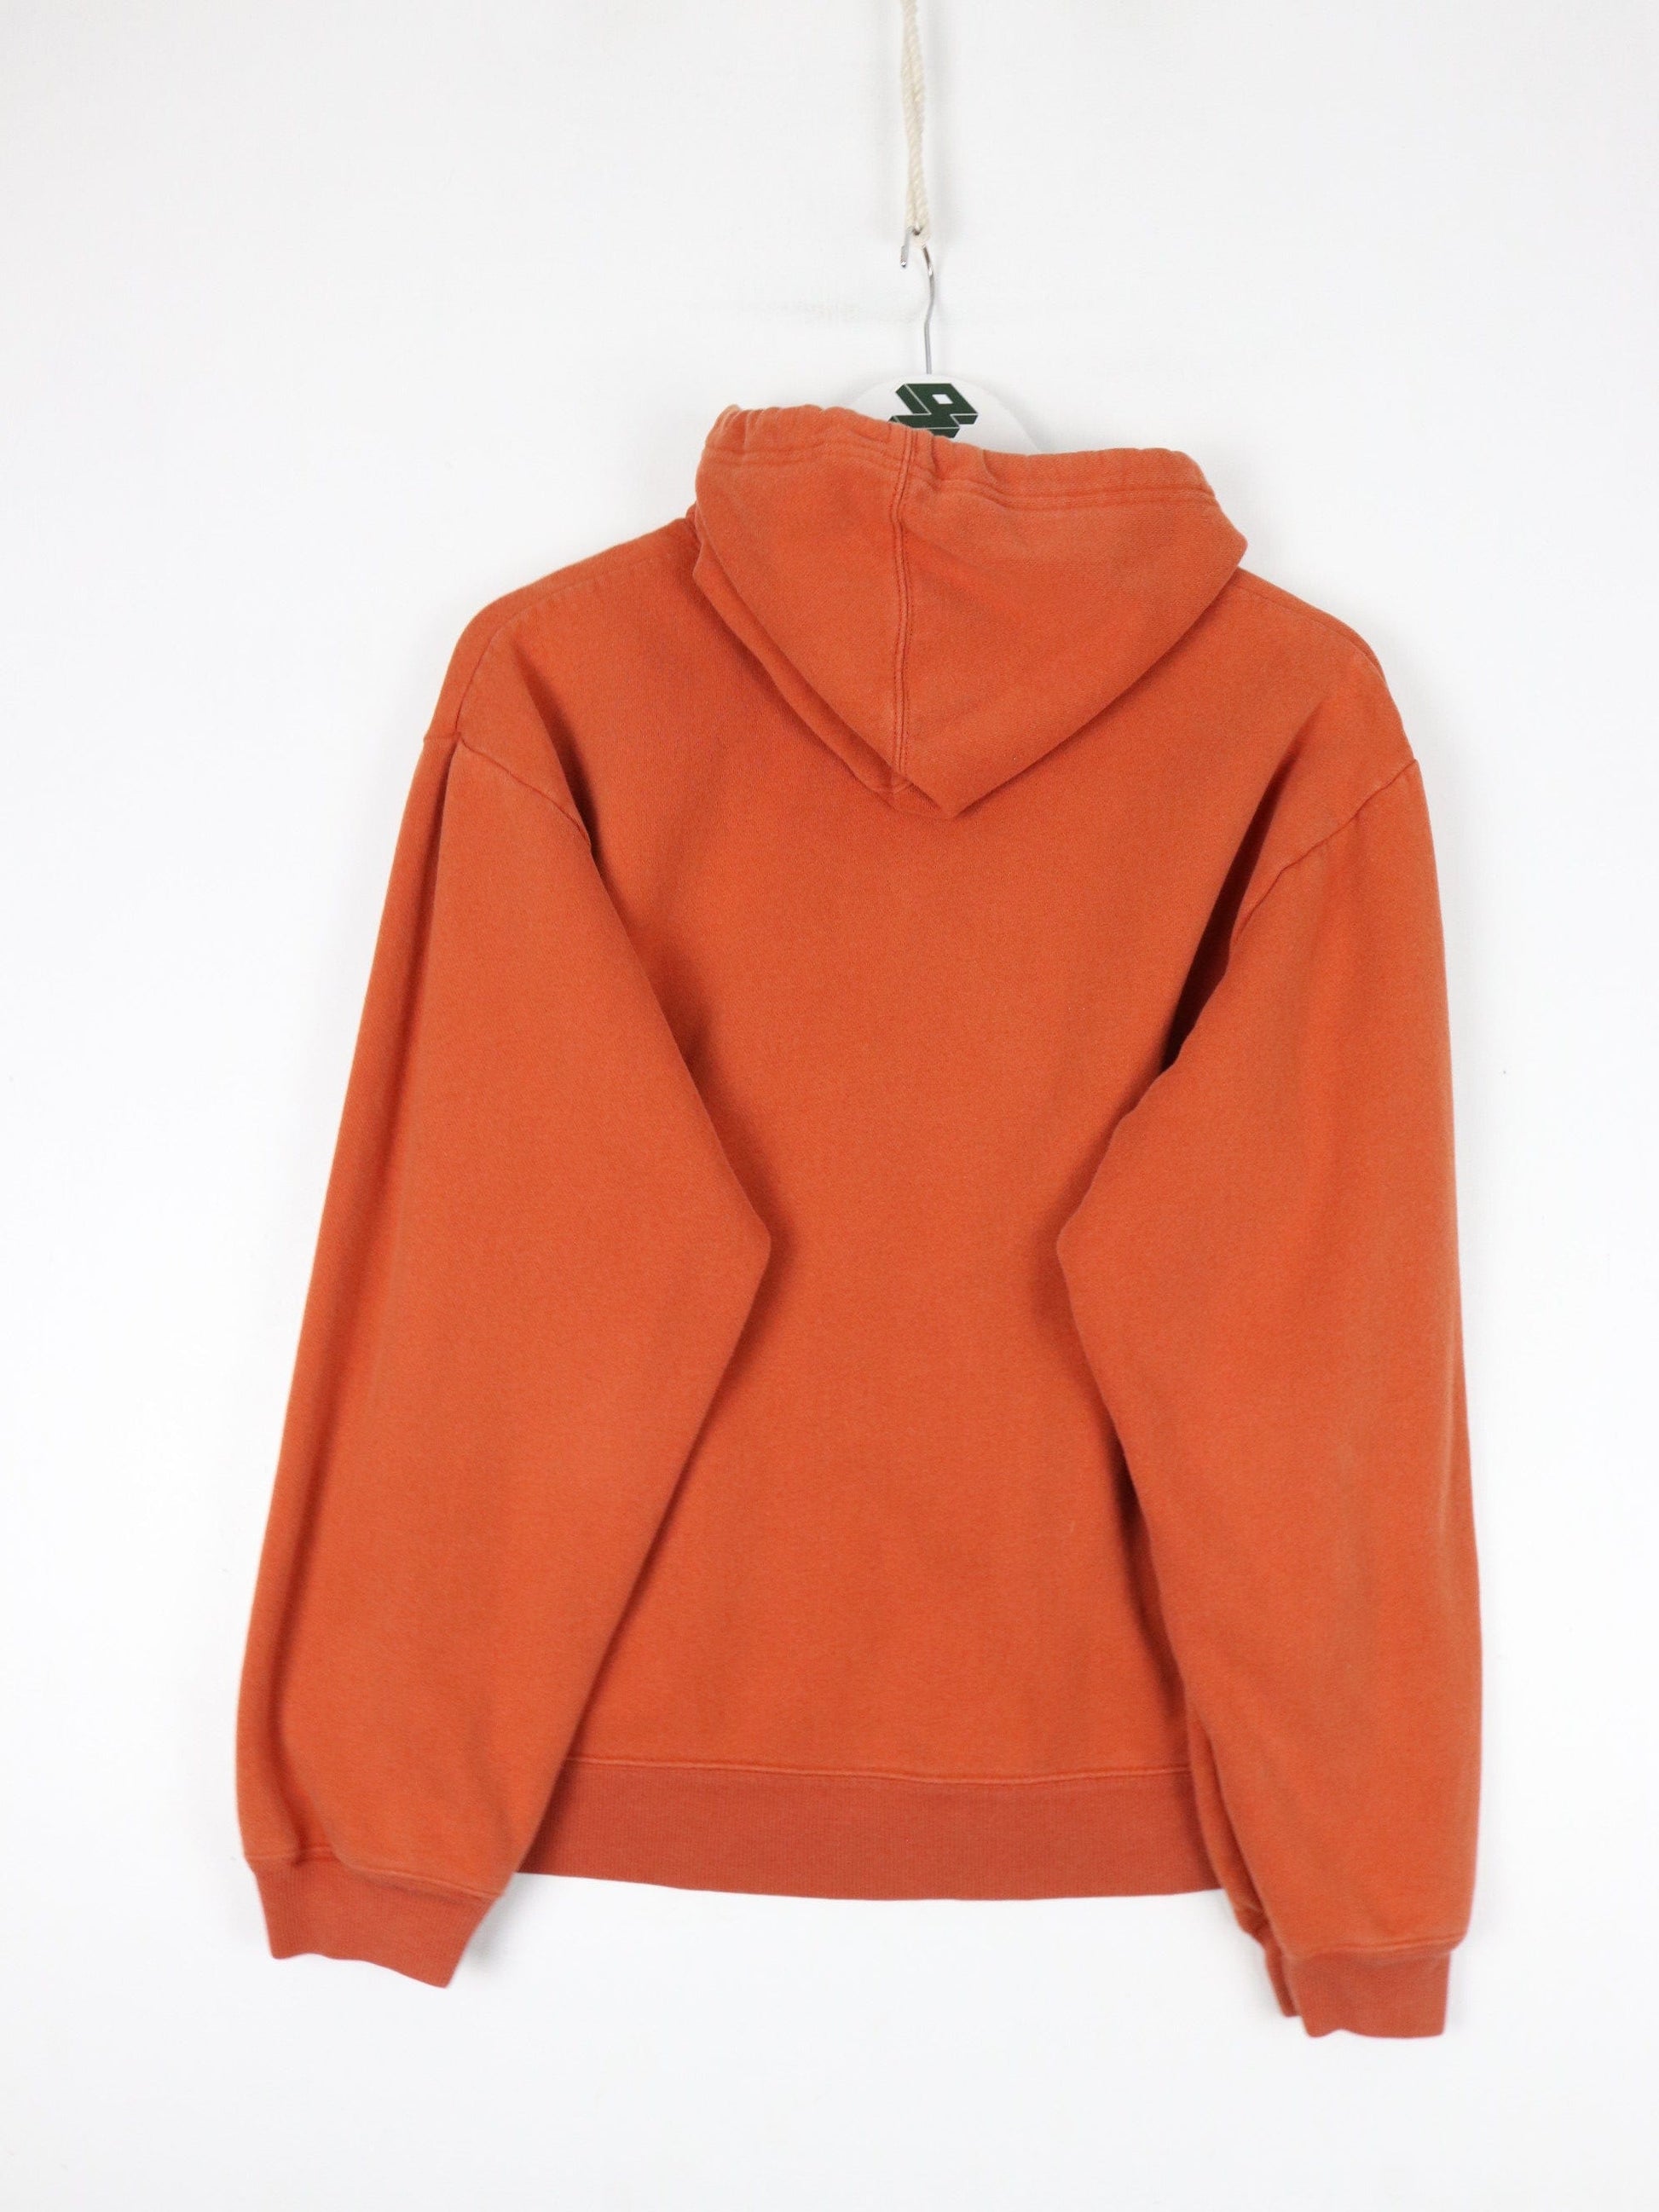 Gap Sweatshirts & Hoodies Gap Sweatshirt Womens Medium Orange Hoodie